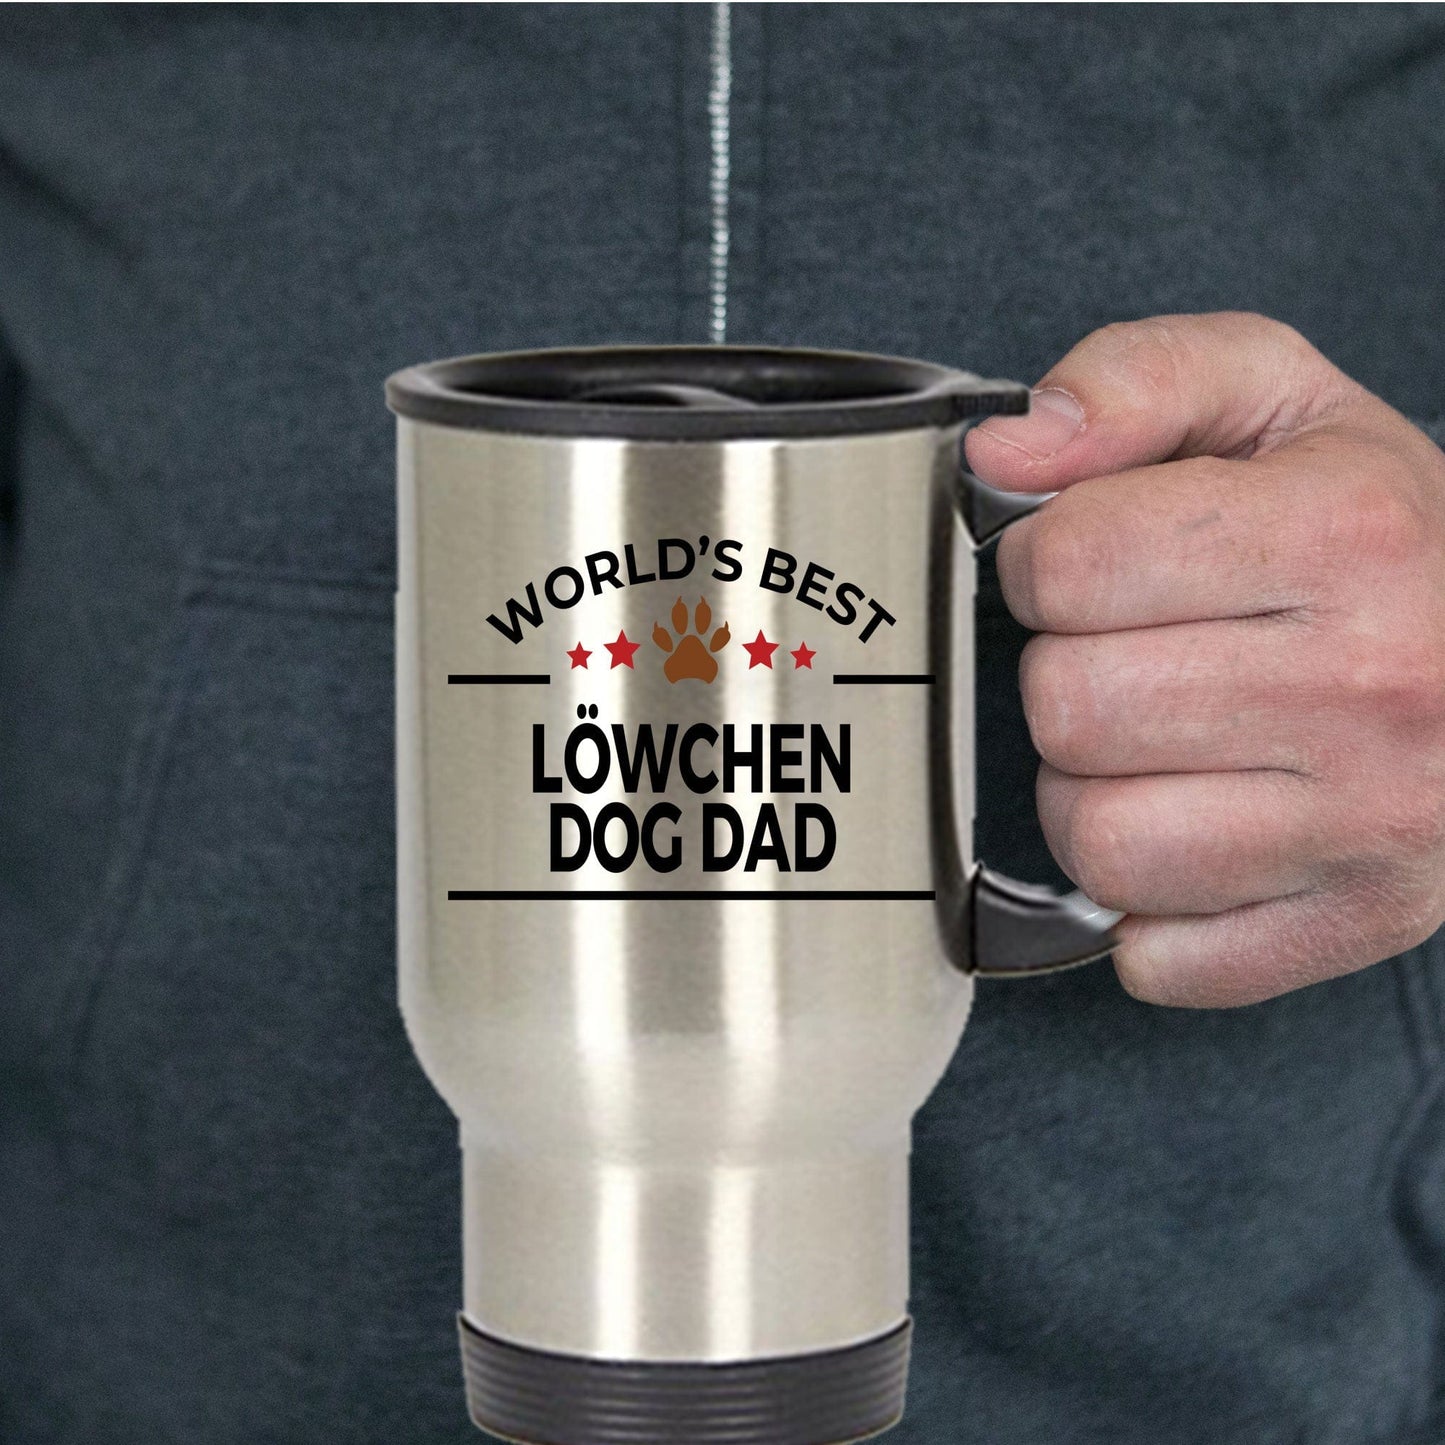 Löwchen Dog Dad Travel Coffee Mug